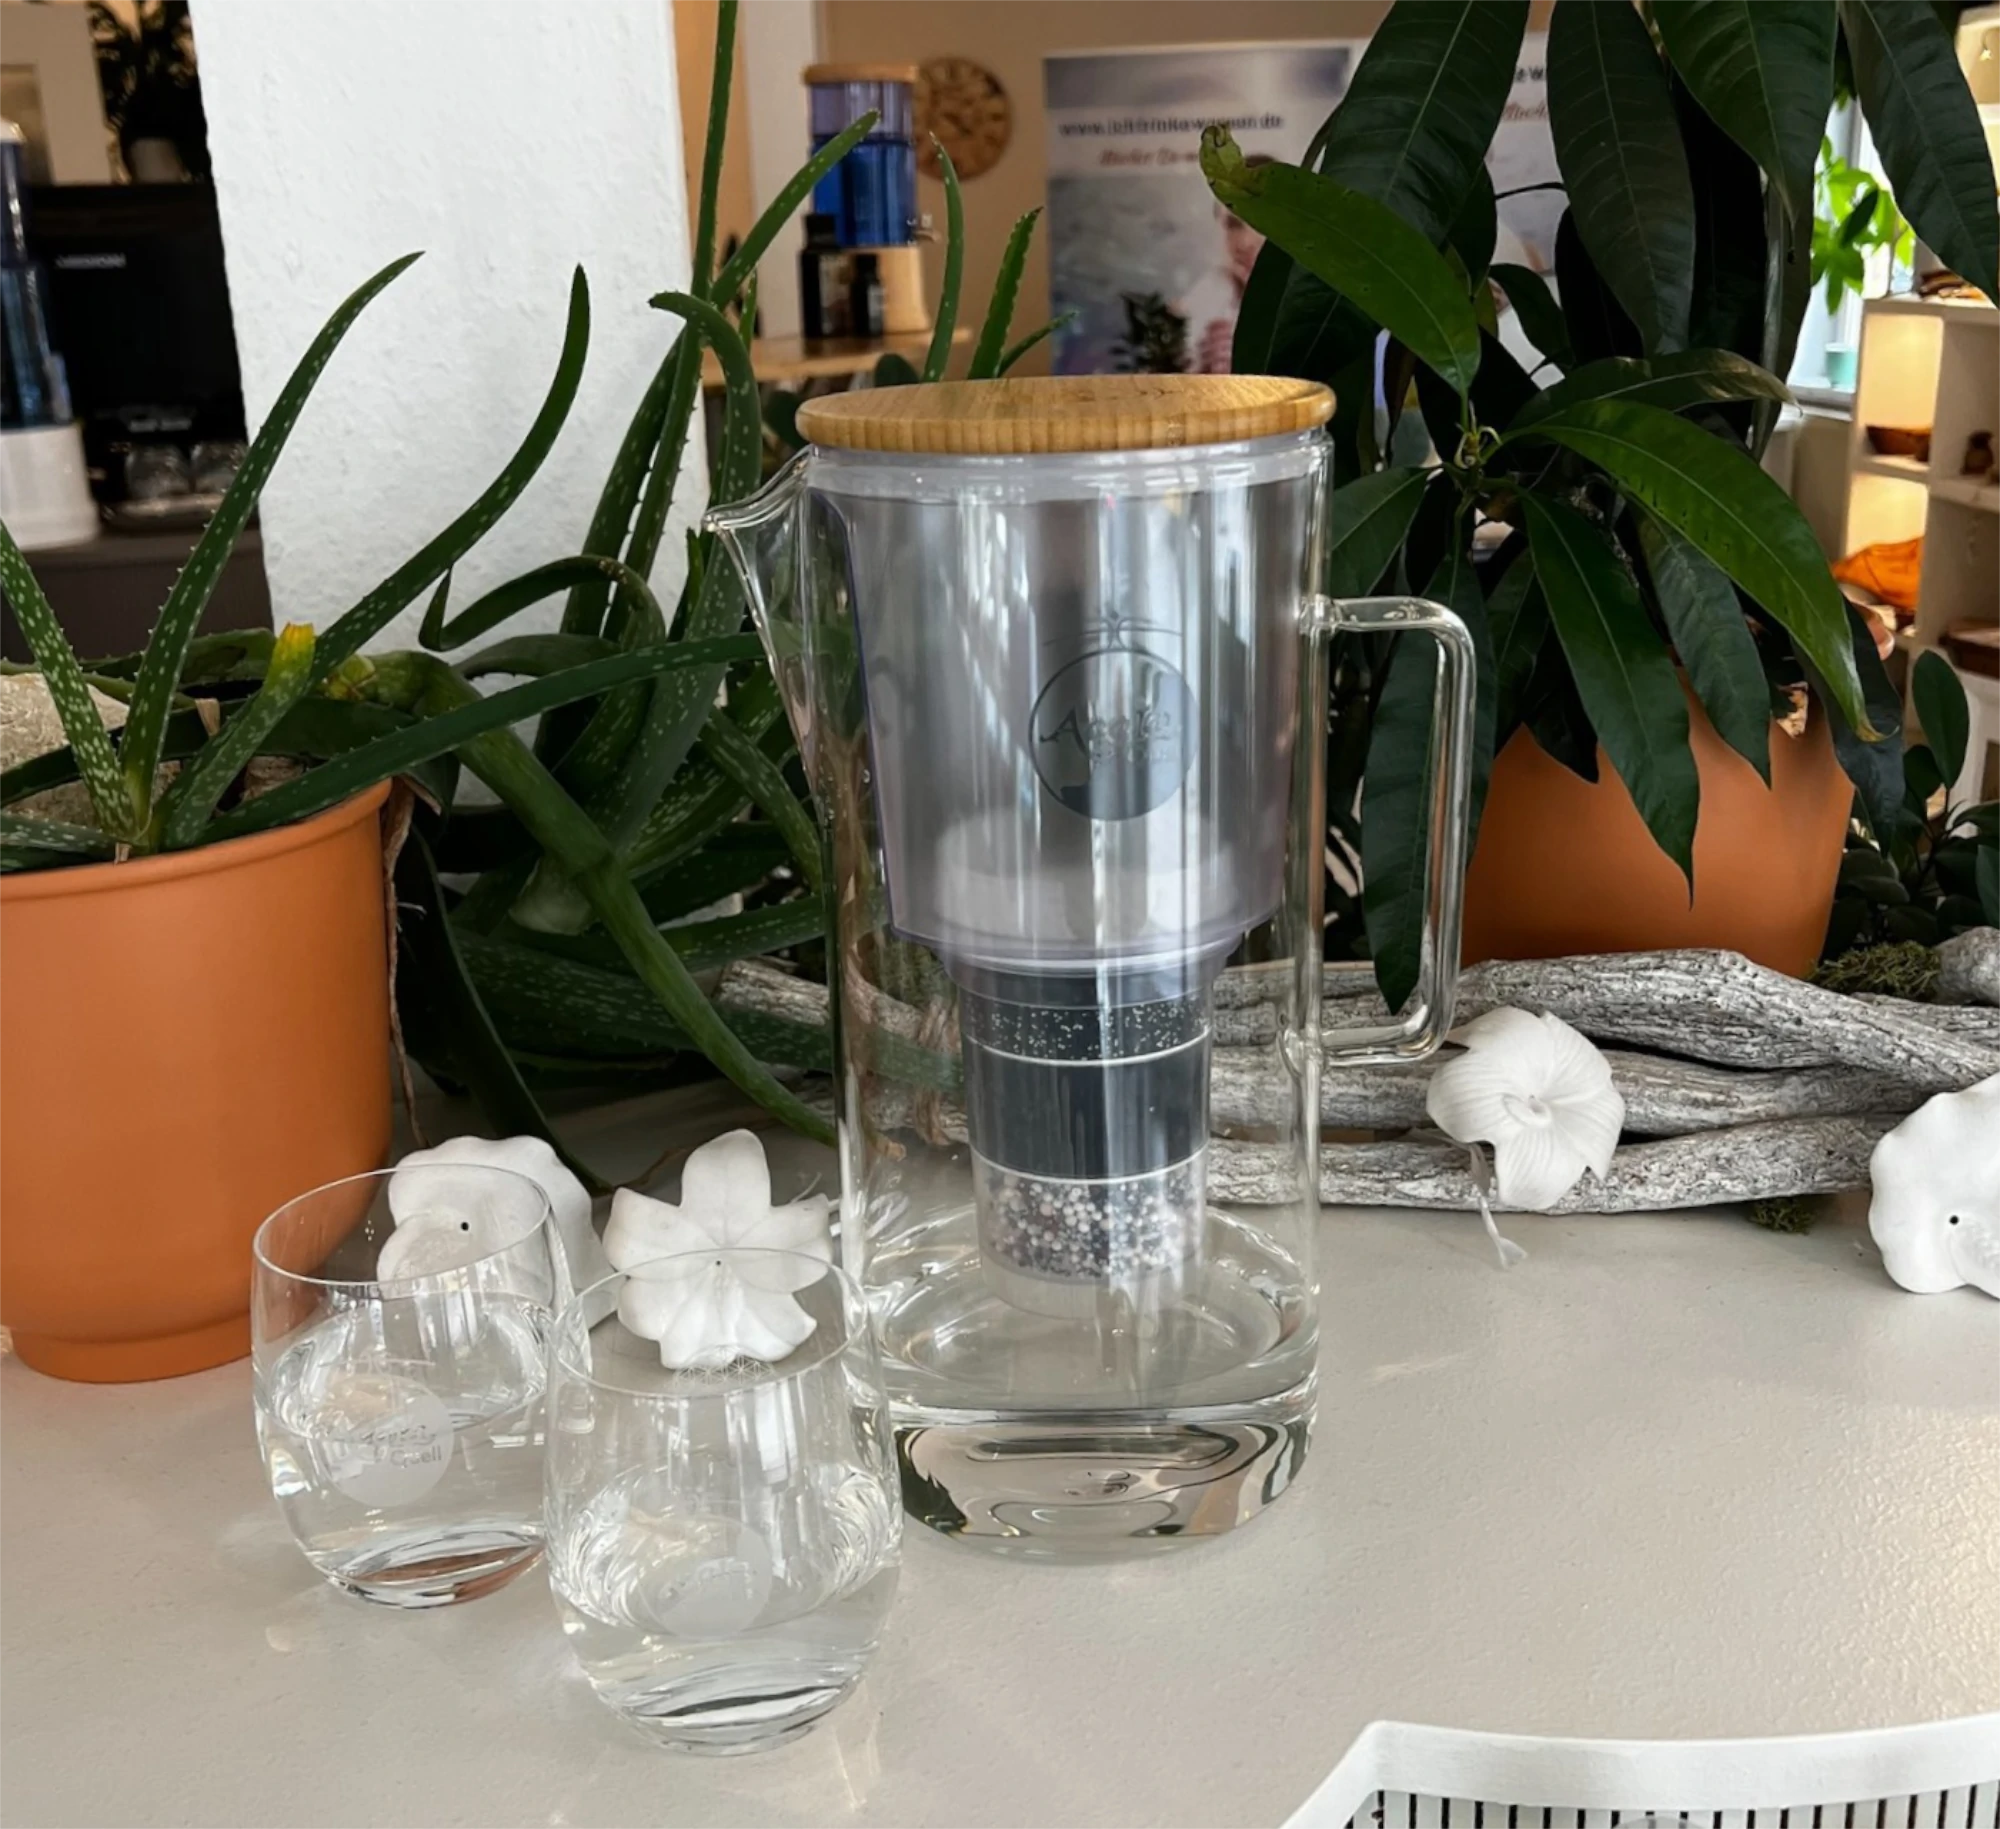 Zu sehen ist die Silizia Wasserfilter Kanne aus Glas von Acala auf einem weißen Tisch mit Grünpflanzen und zwei Trinkgläsern.